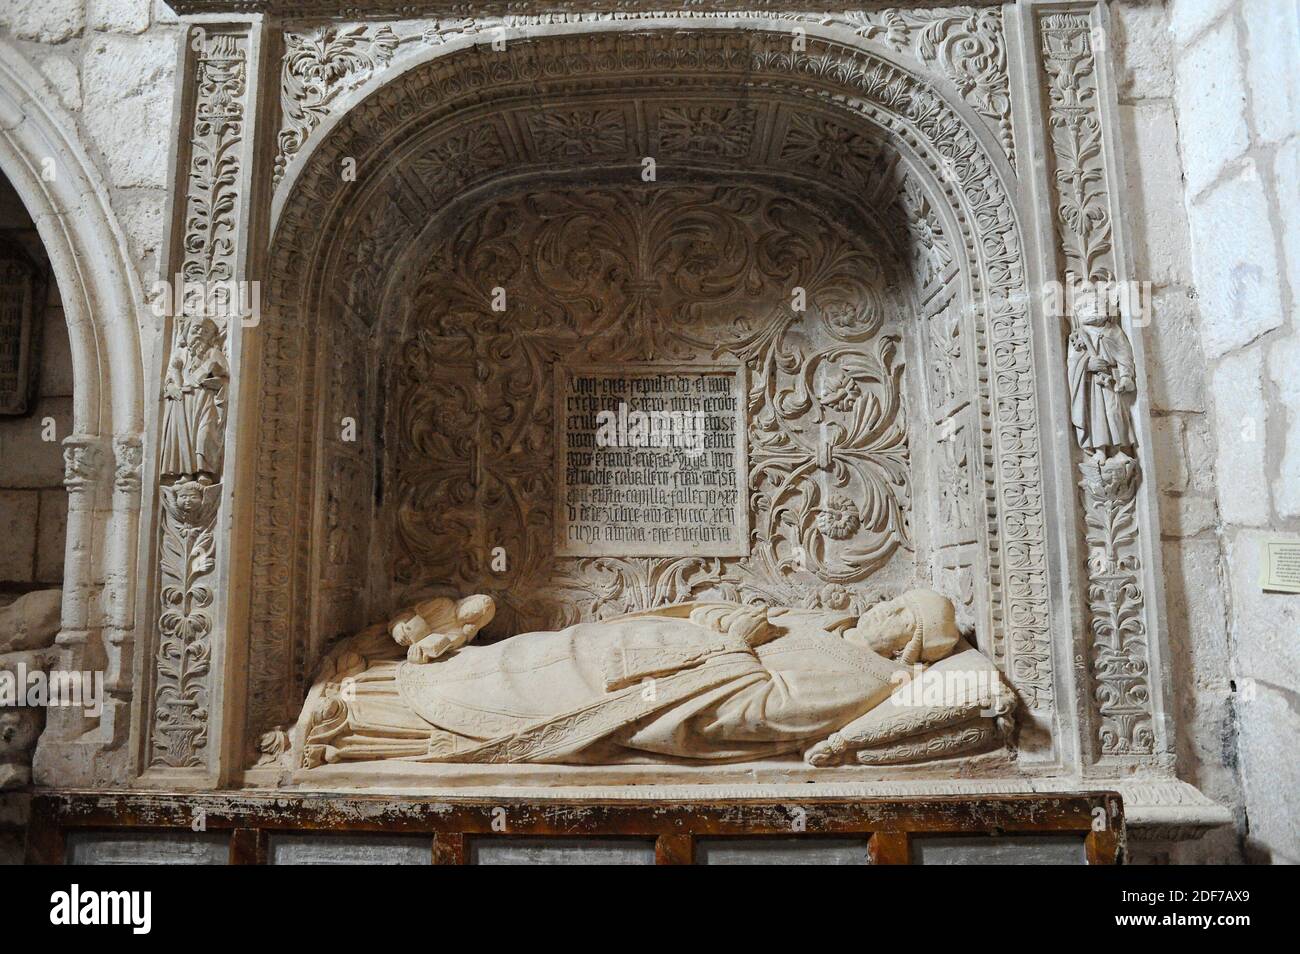 Covarrubias, Colegiata de San Cosme y San Damian (15th century), tomb. Burgos province, Castilla y Leon, Spain. Stock Photo